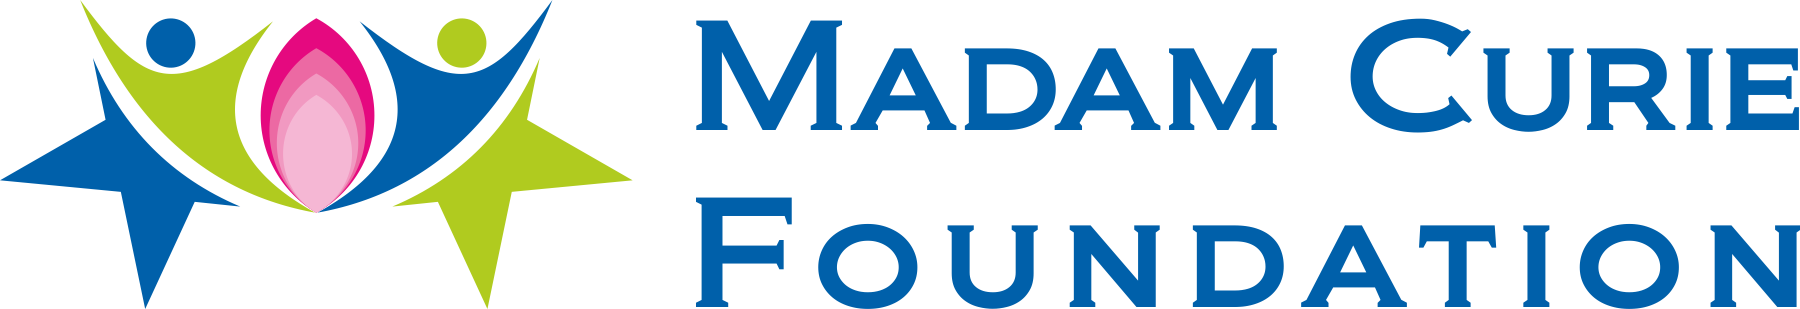 Madam Curie Foundation